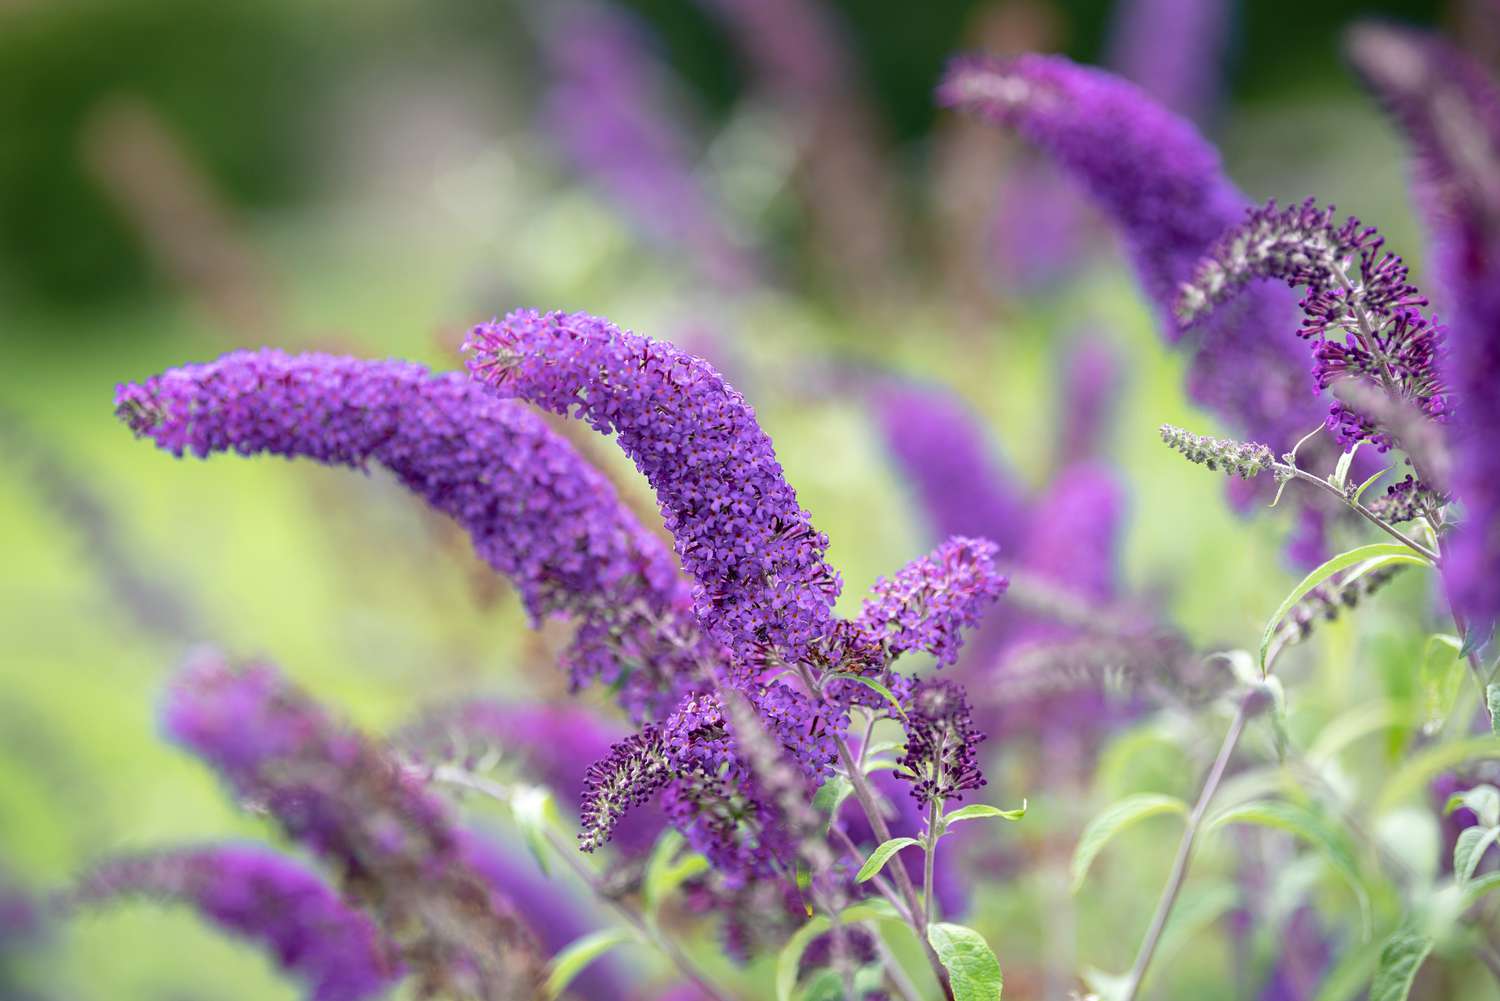 Schmetterlingsstrauch mit violetten Blütenähren in Großaufnahme